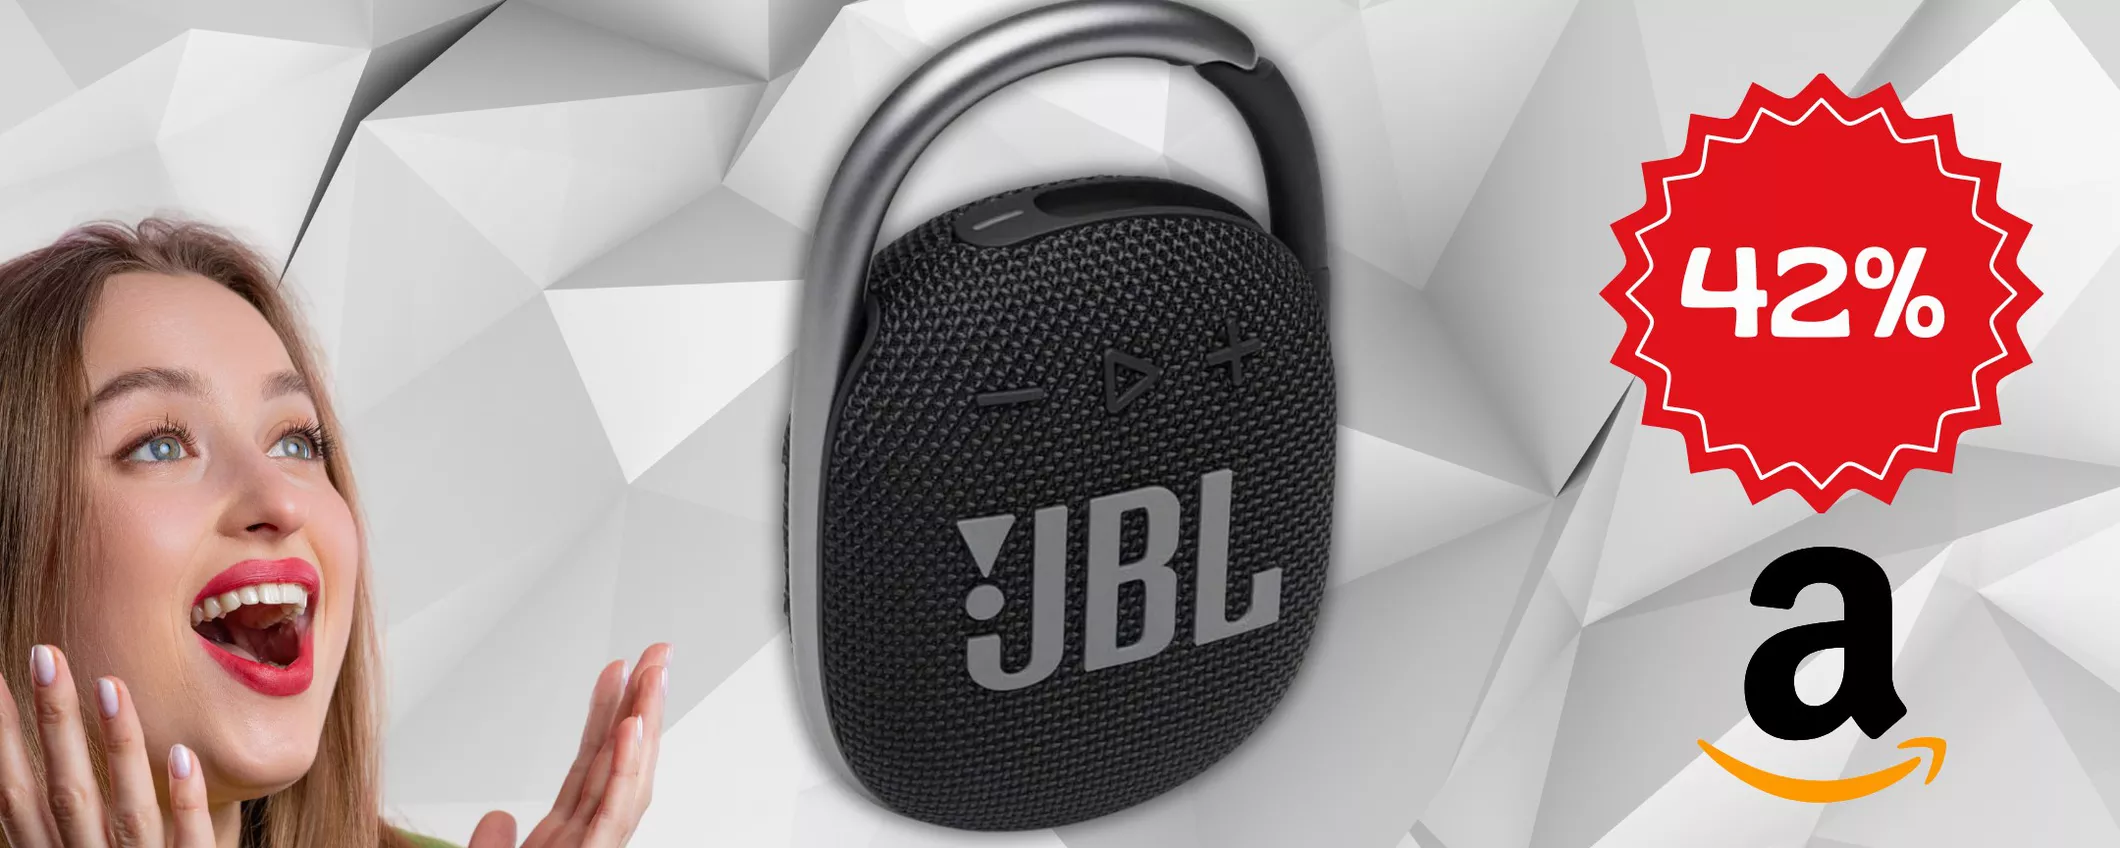 Cassa Bluetooth JBL: solo per OGGI è disponibile un SUPER SCONTO